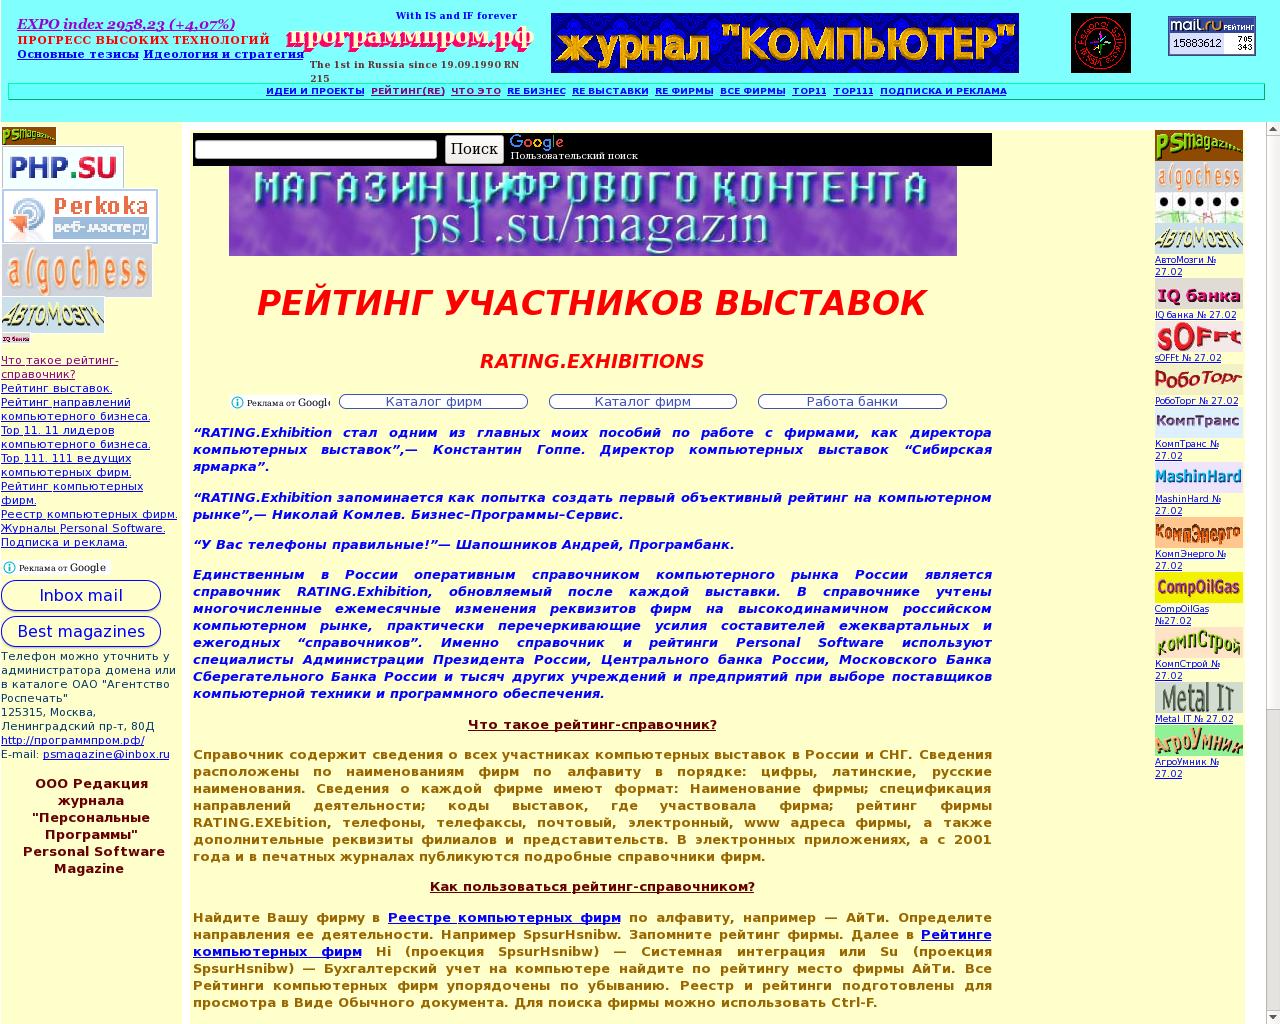 Изображение сайта программпром.рф в разрешении 1280x1024